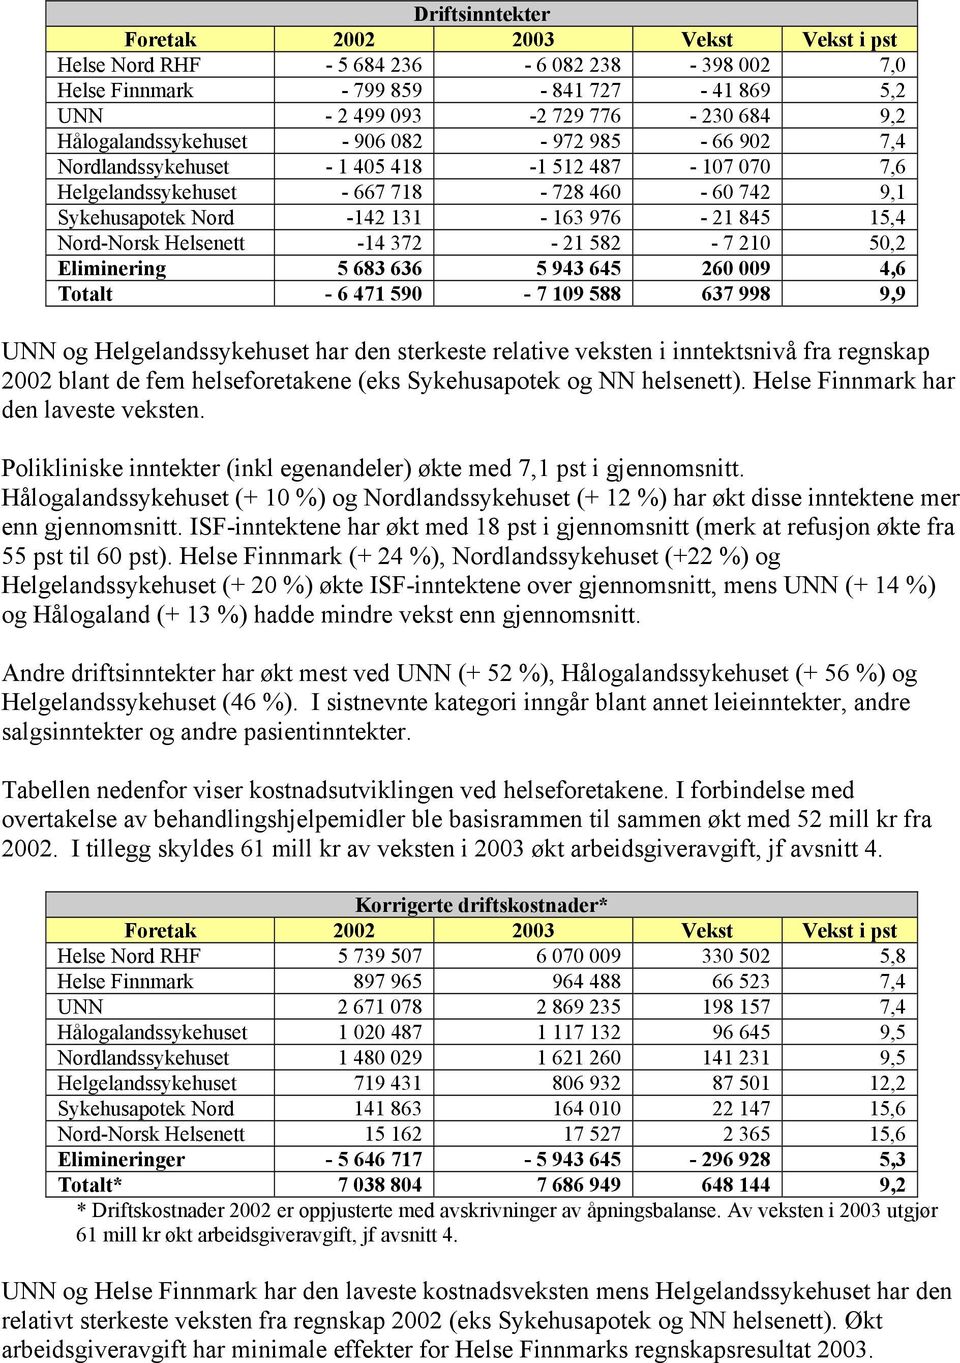 Nord-Norsk Helsenett -14 372-21 582-7 210 50,2 Eliminering 5 683 636 5 943 645 260 009 4,6 Totalt - 6 471 590-7 109 588 637 998 9,9 UNN og Helgelandssykehuset har den sterkeste relative veksten i